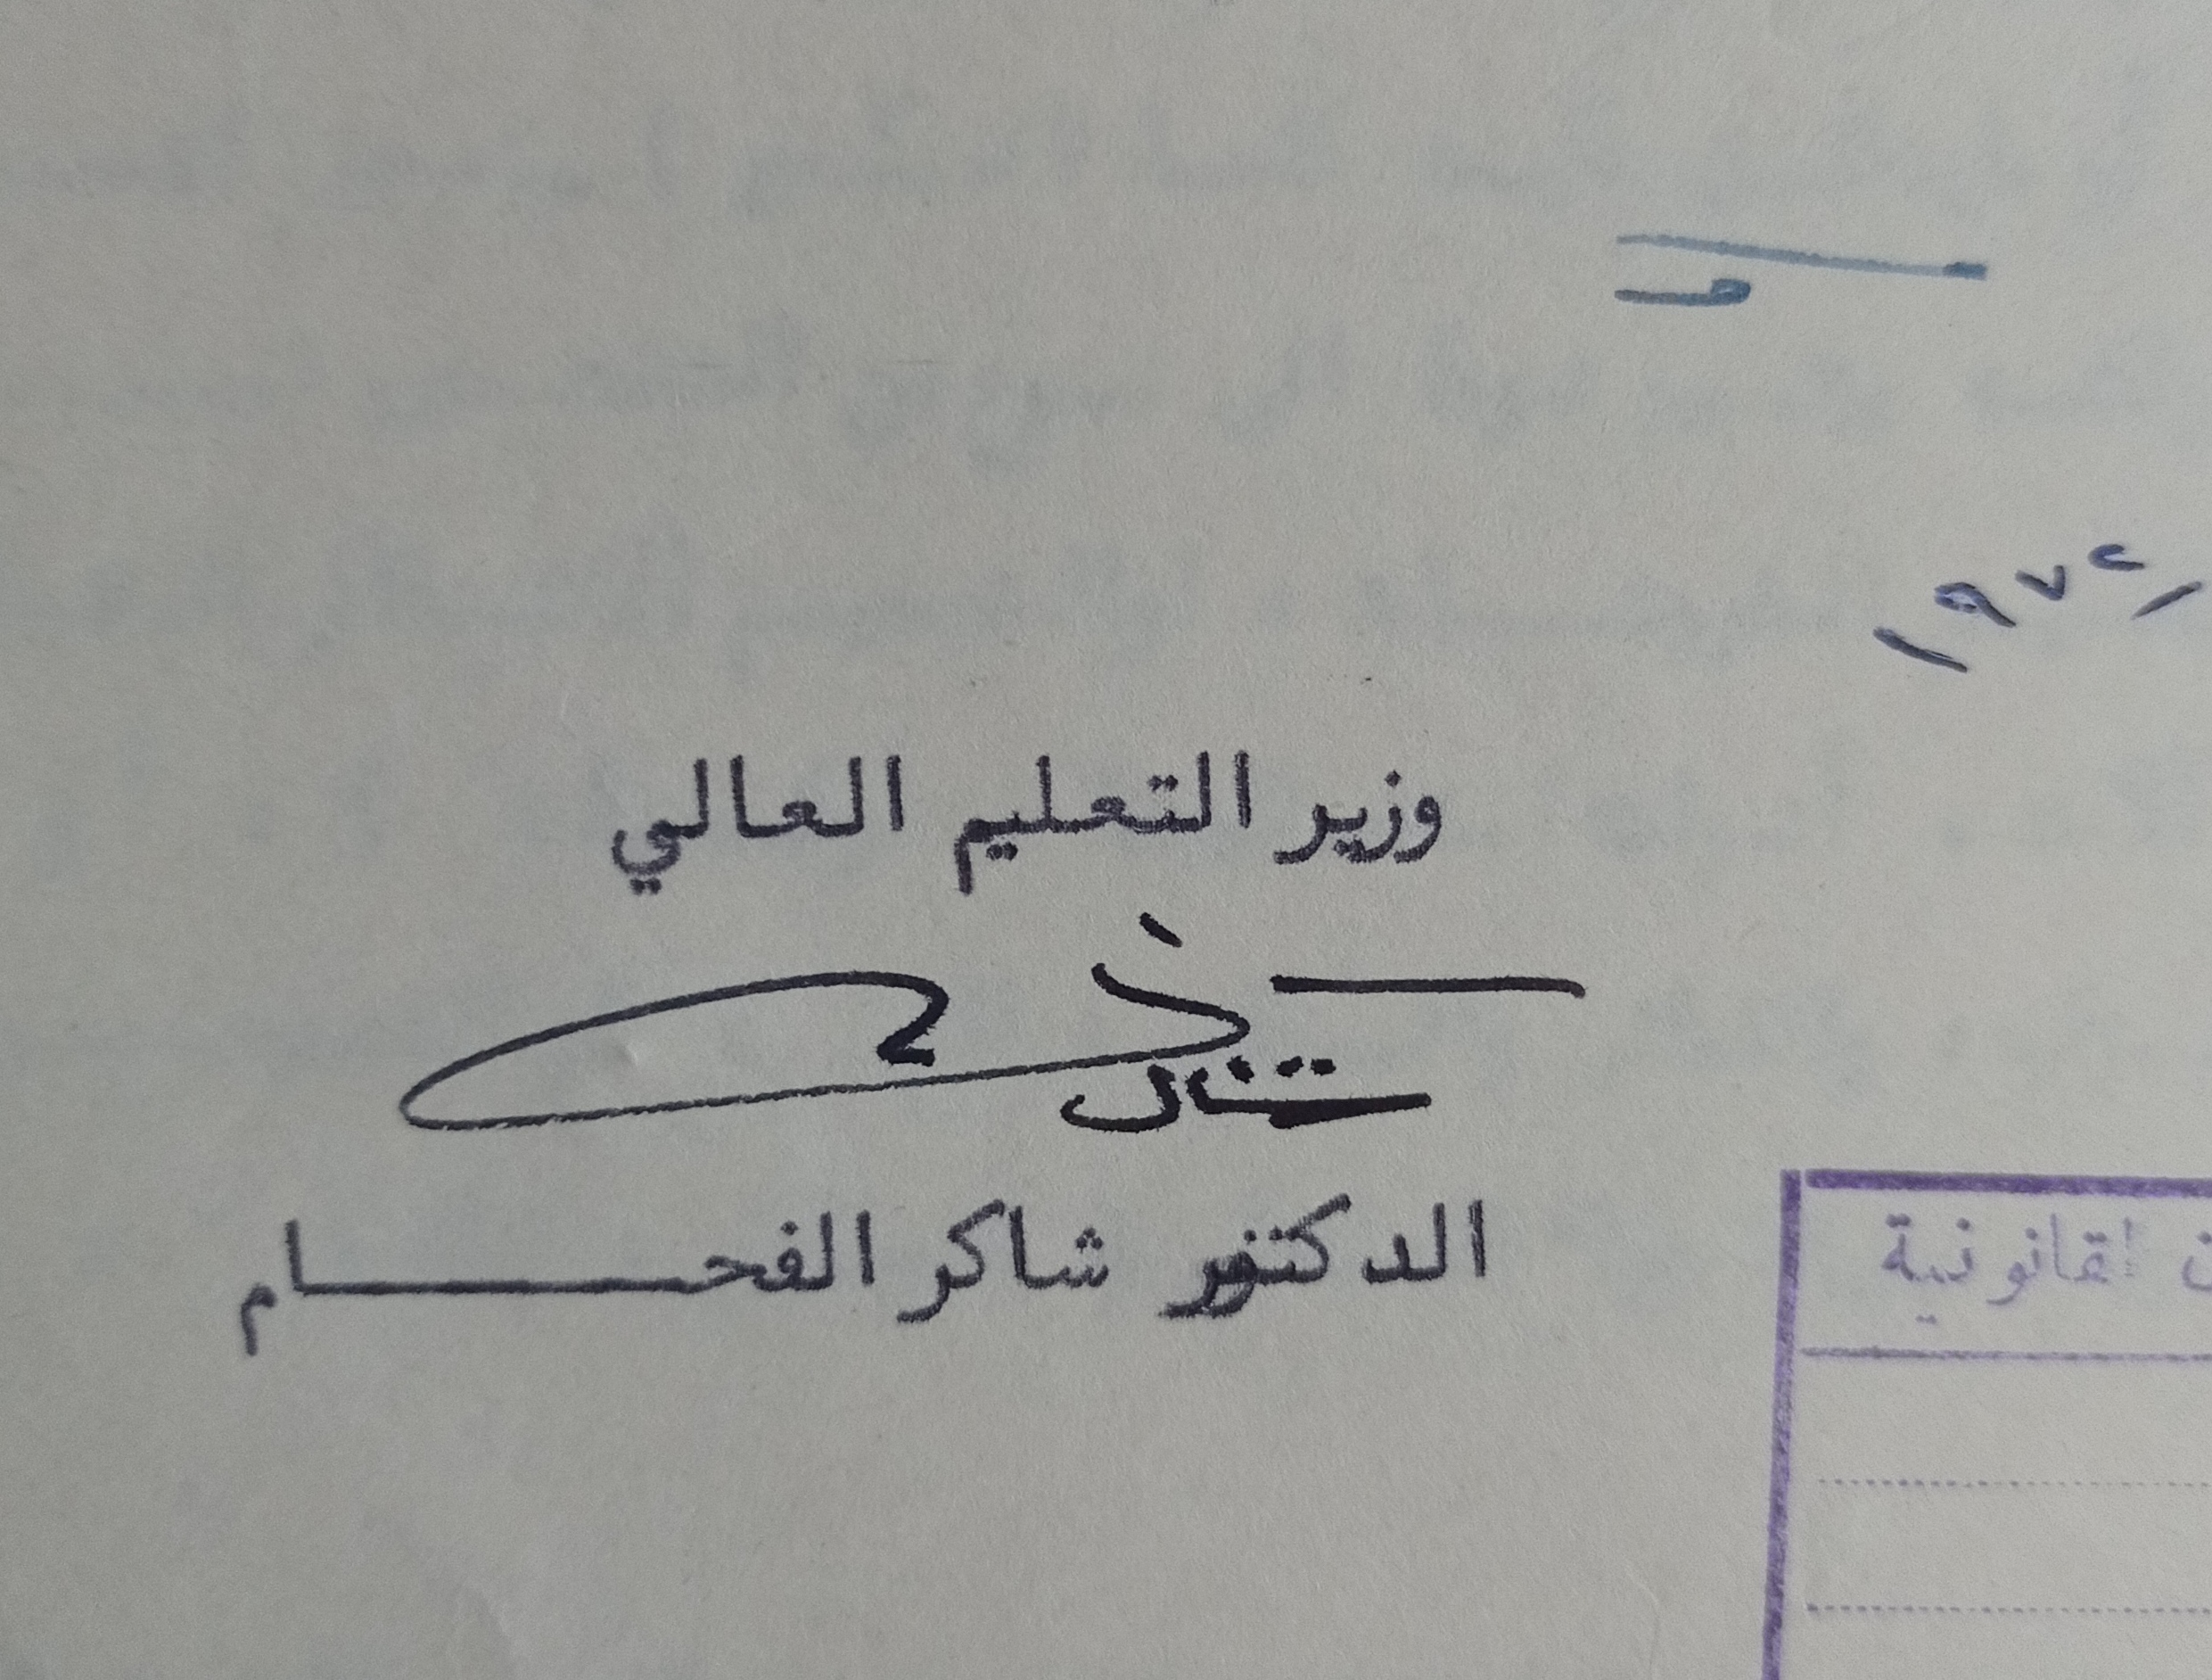 التاريخ السوري المعاصر - توقيع شاكر الفحام وزير التعليم العالي في سورية عام 1972